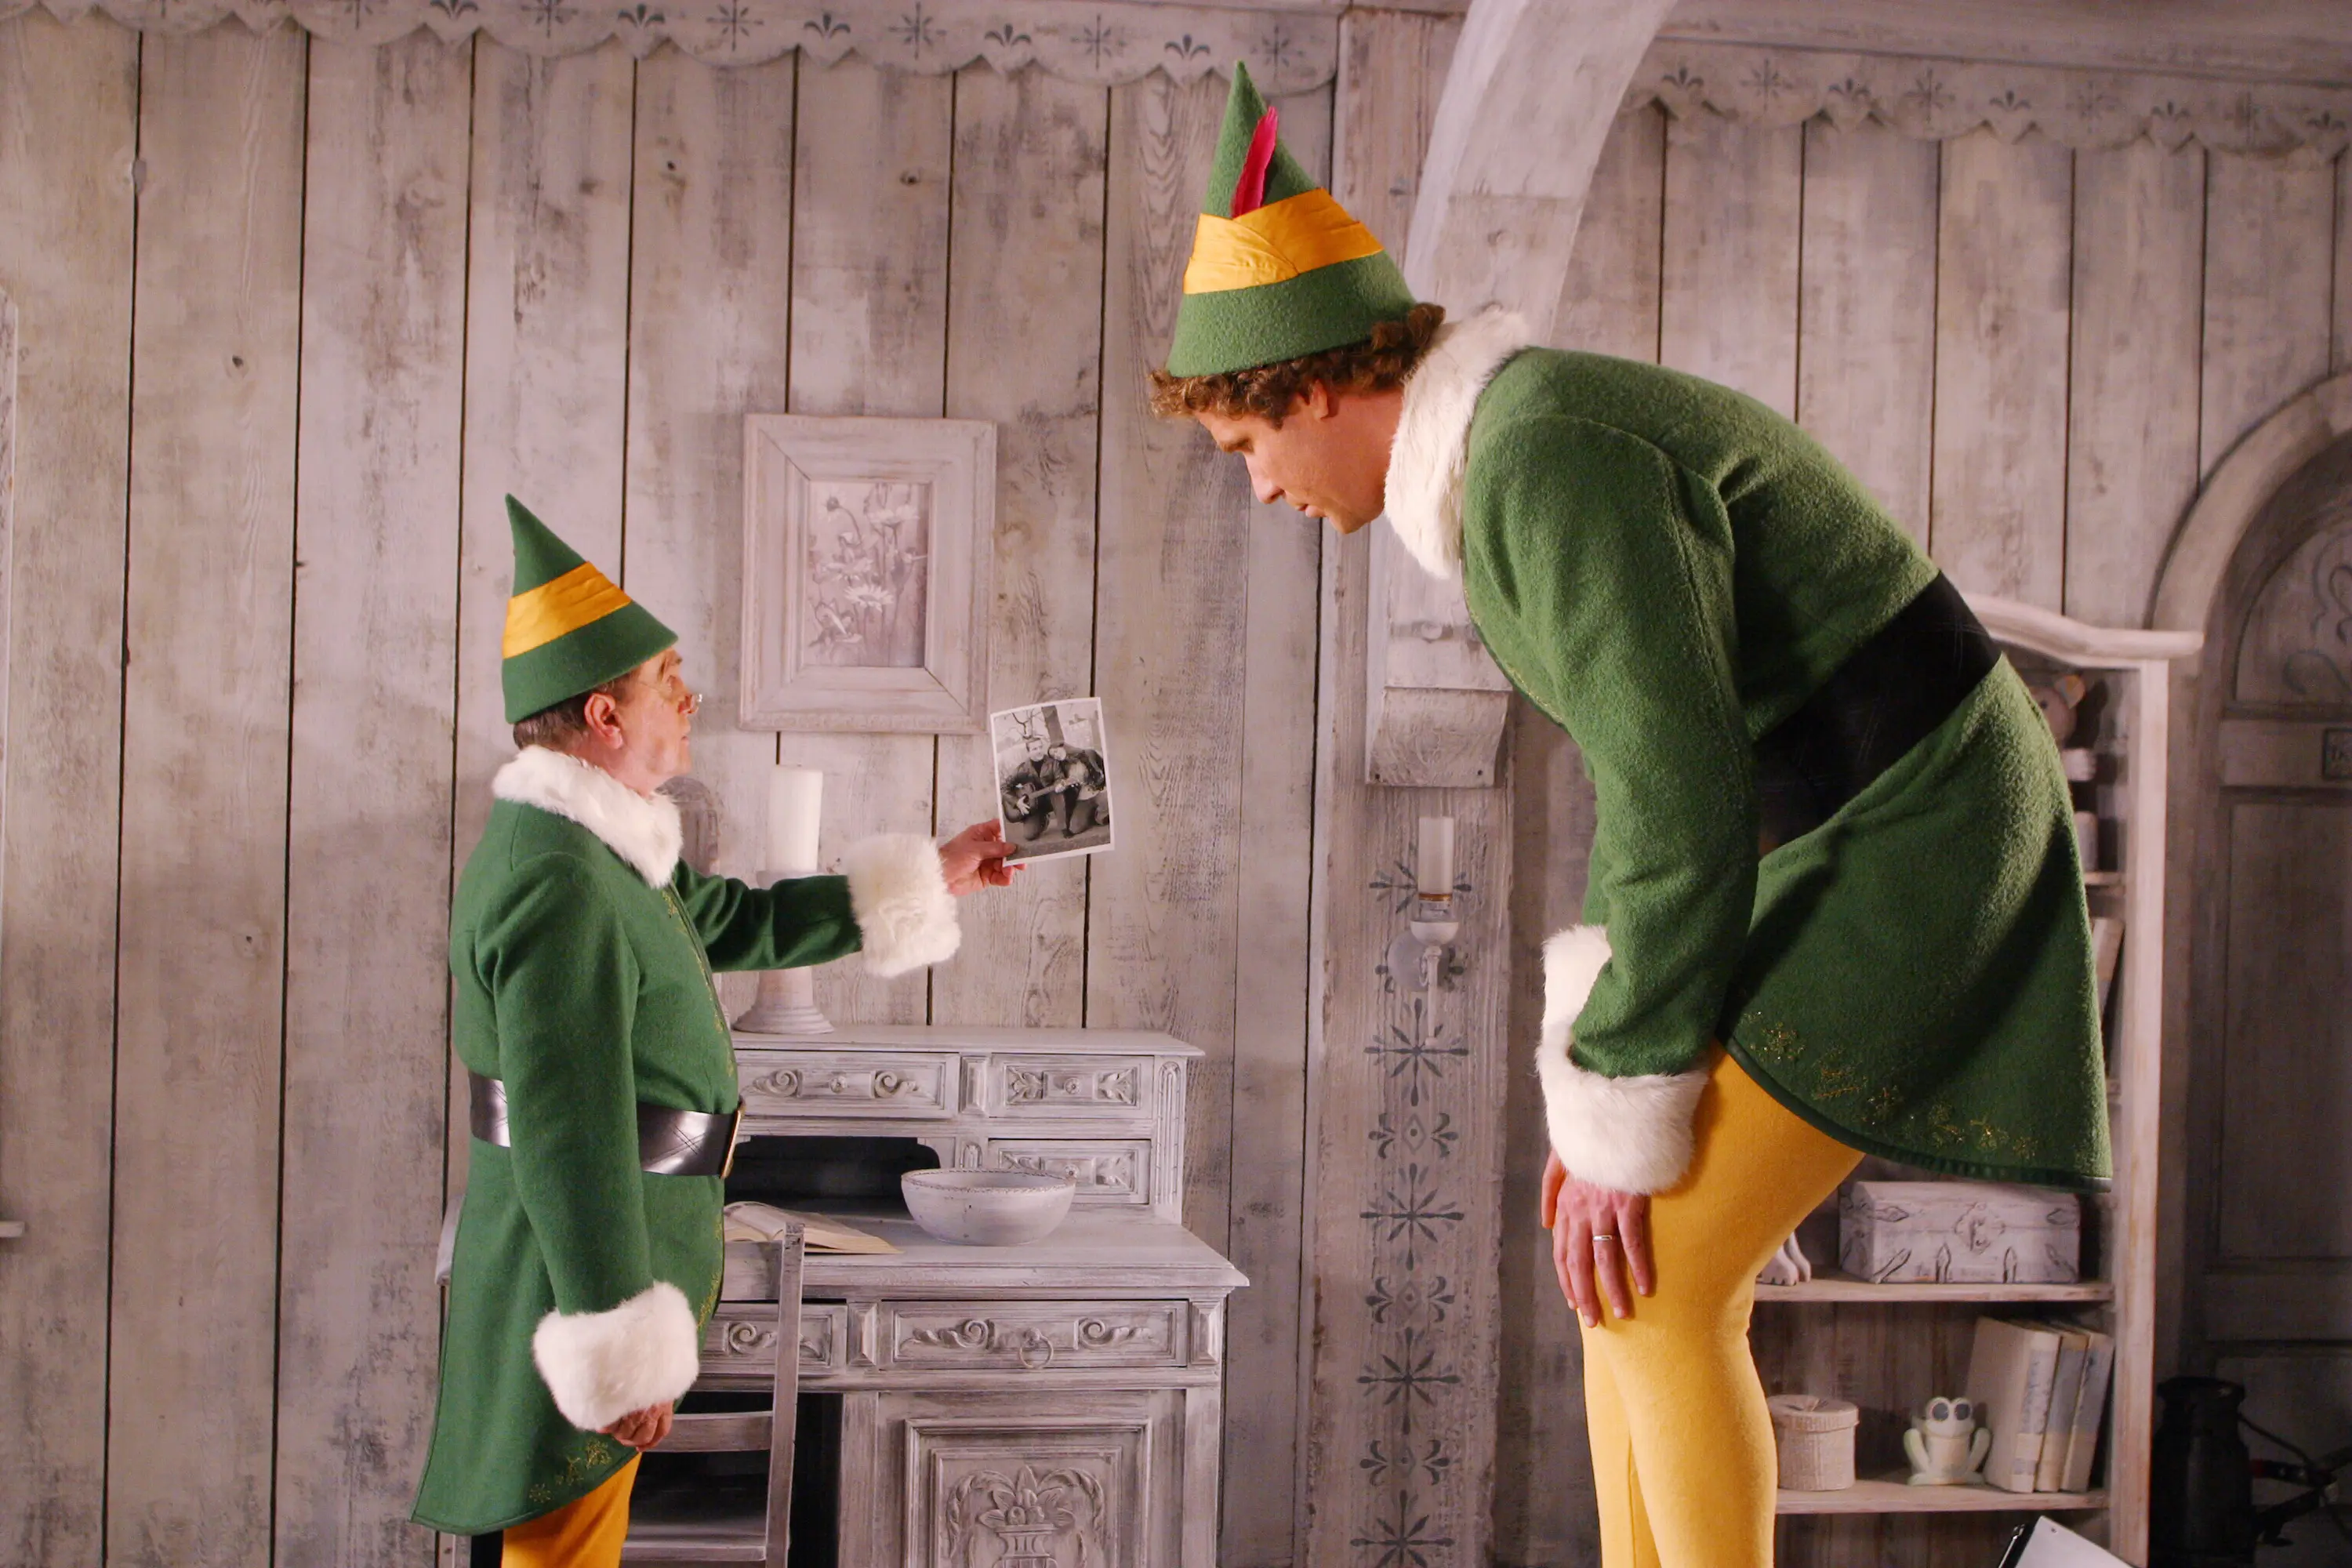 Elf (2003) - IMDb